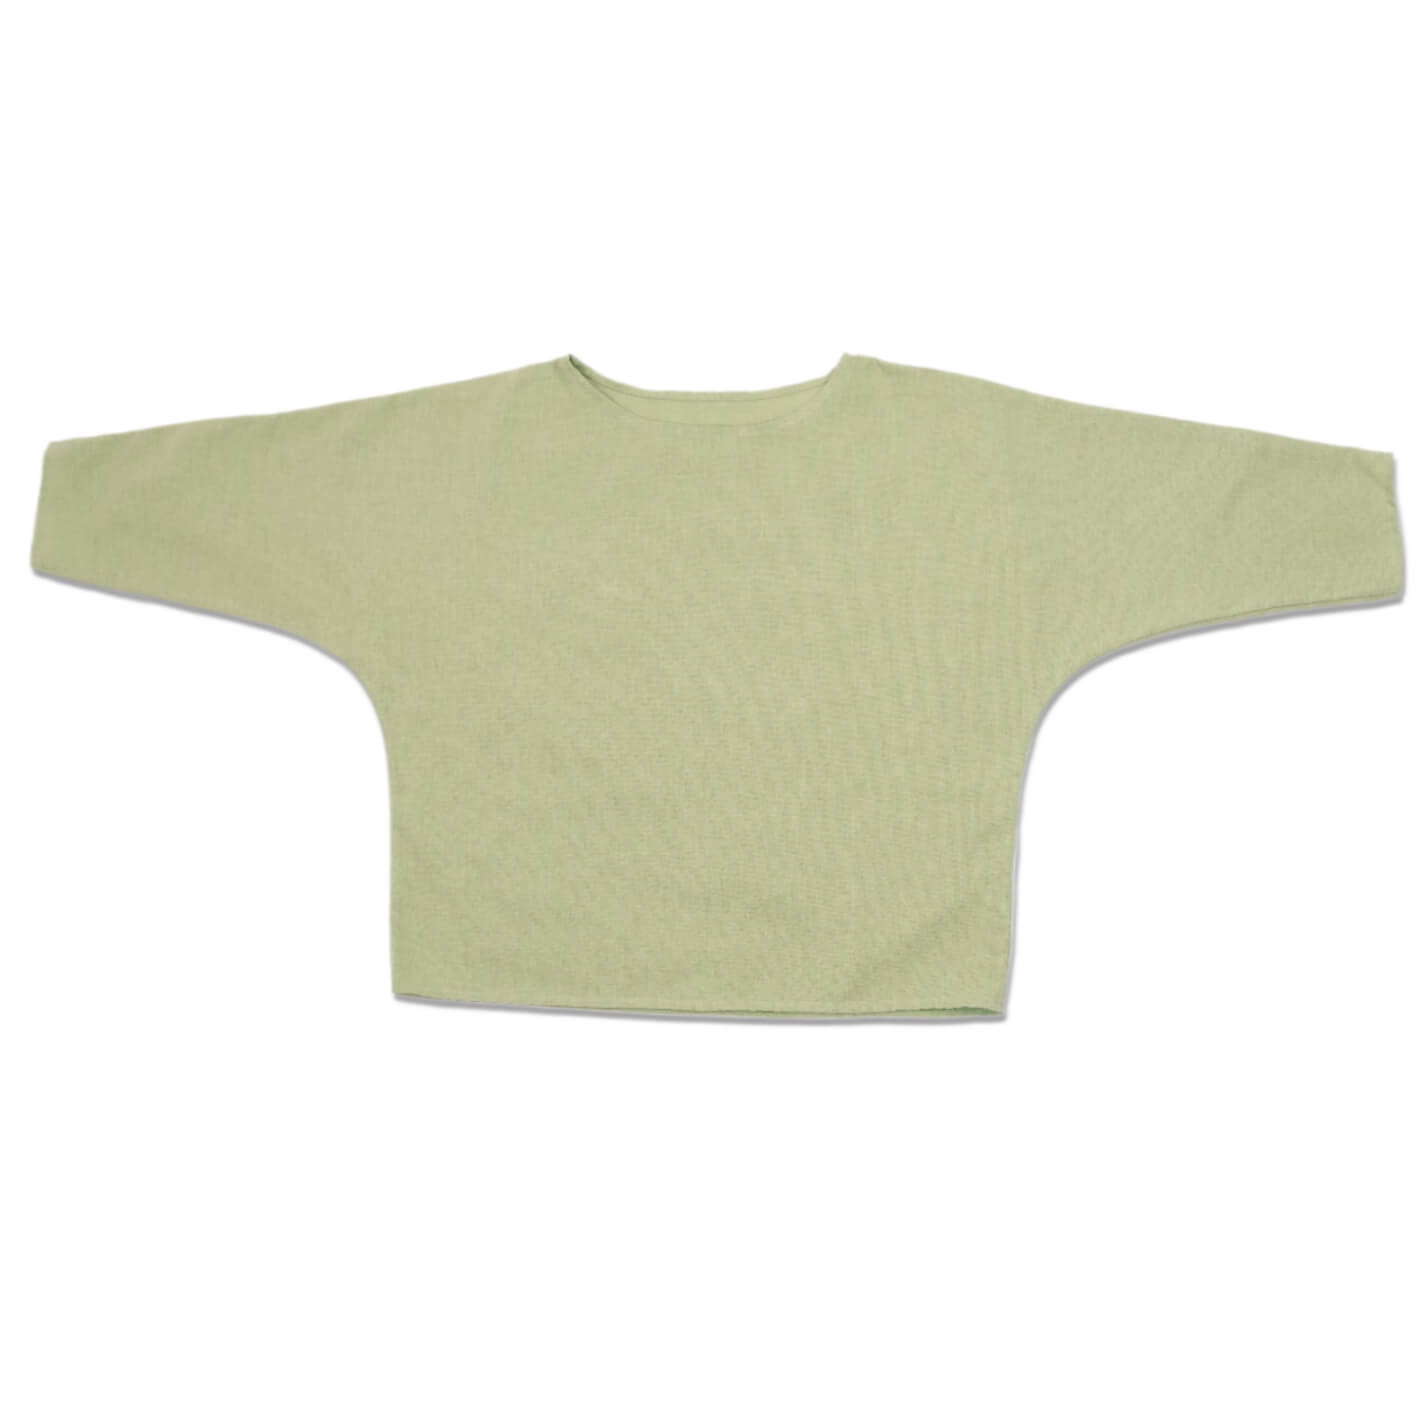 Bluza dama din in si bumbac cu maneca trei sferturi Kidizi Dakota green S/M